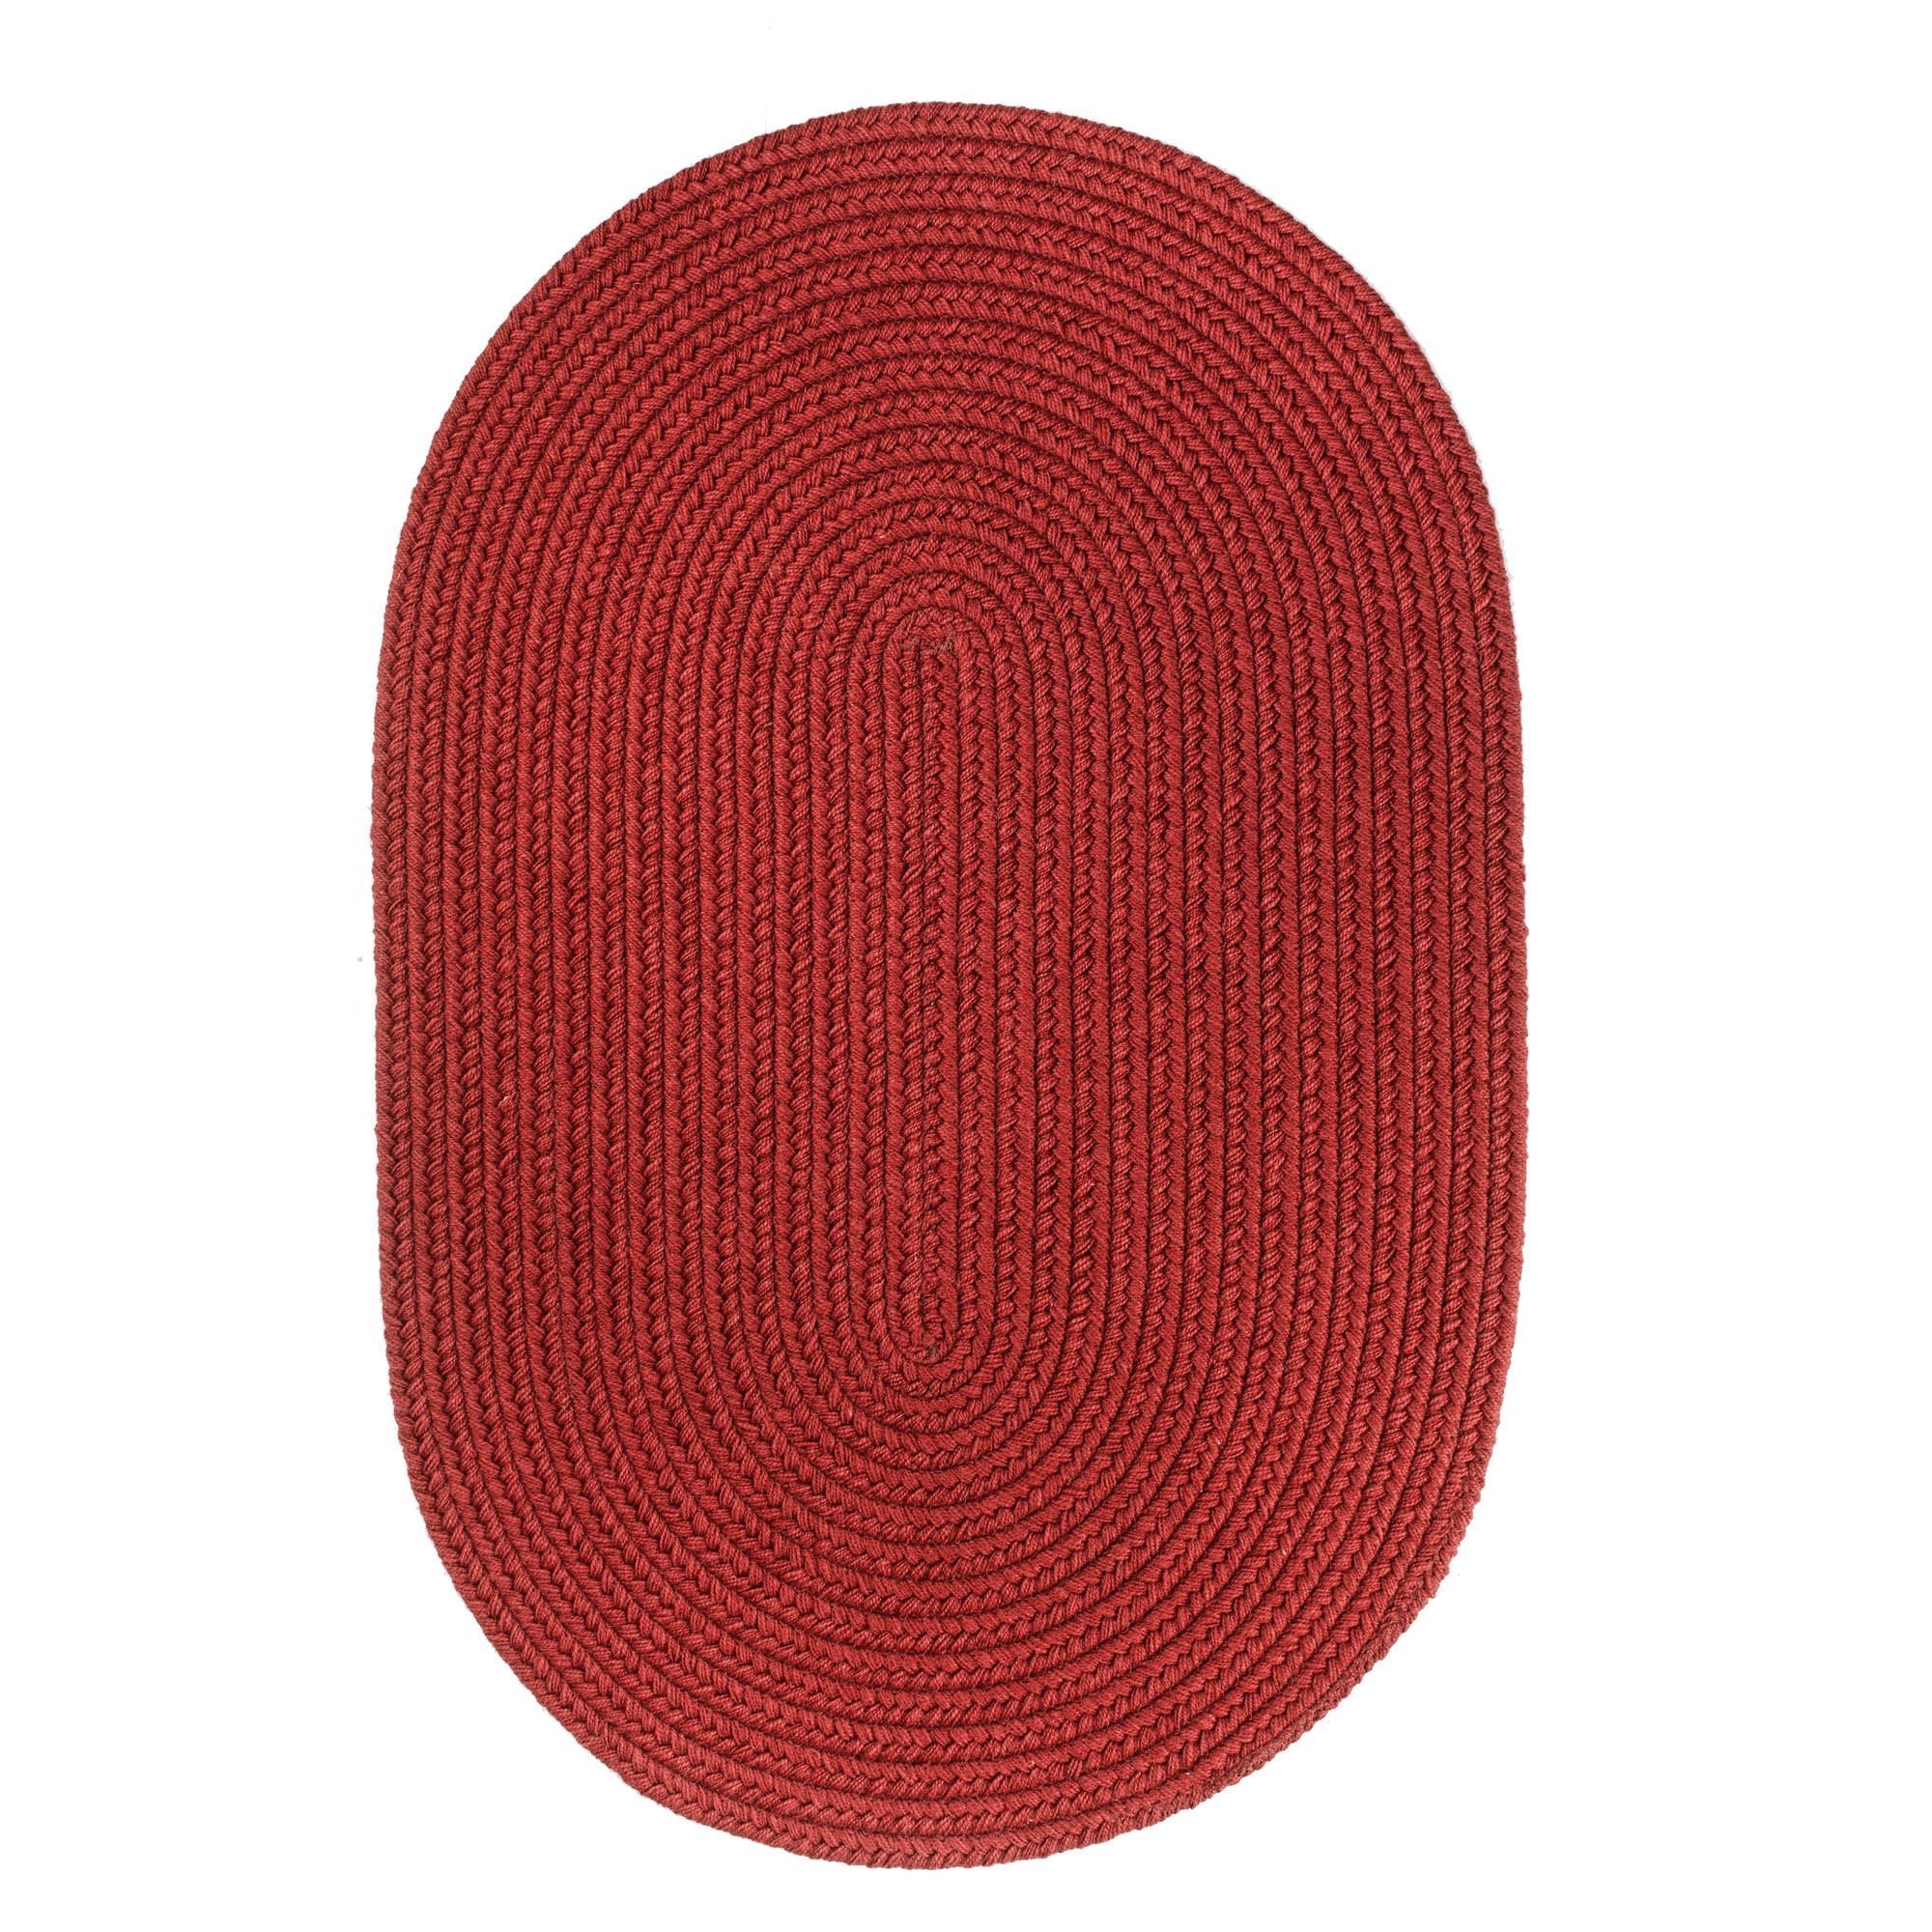 Pura Braided Wool Rug #color_scarlet red